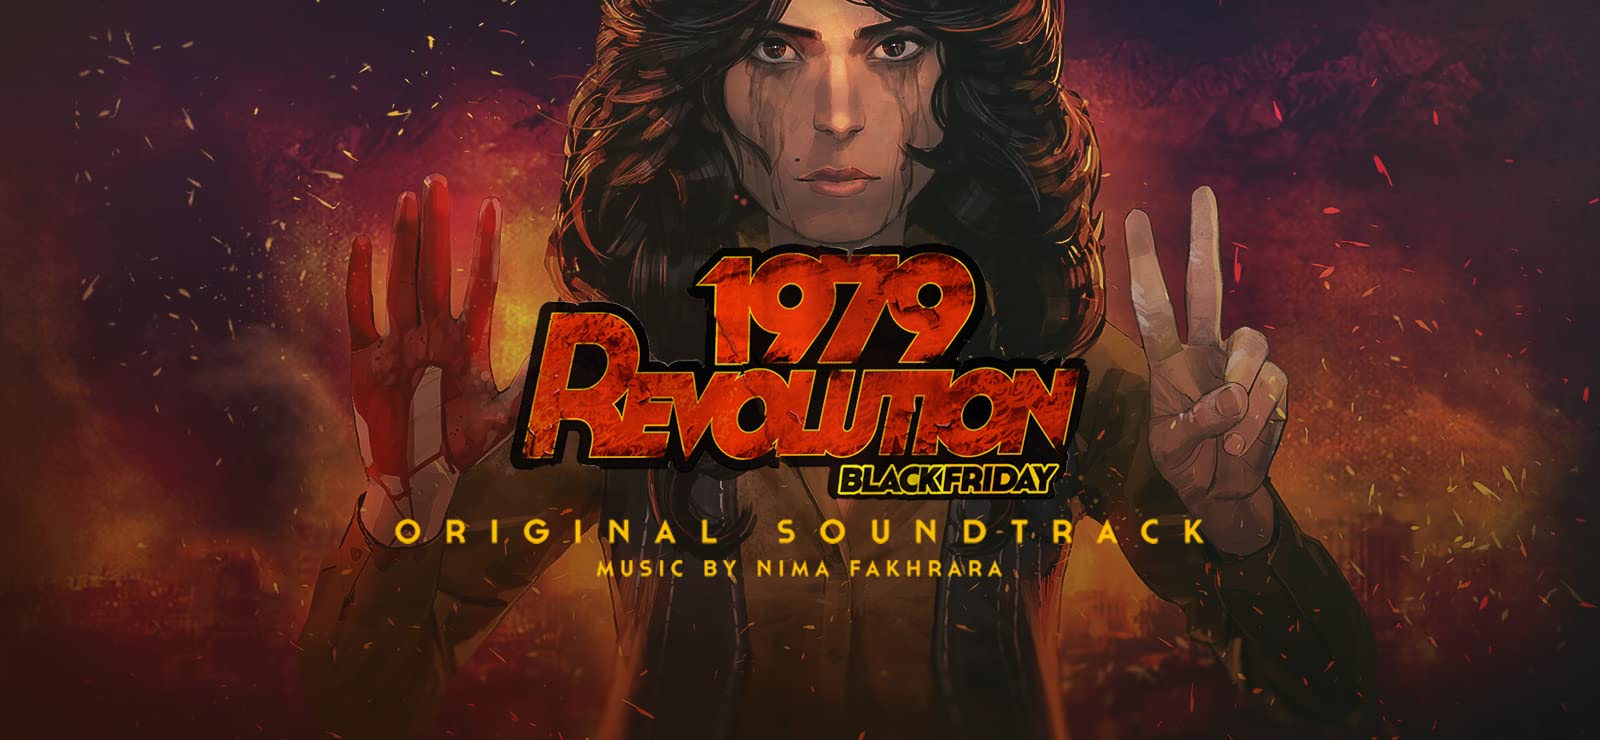 Revolution 1979 black friday mac